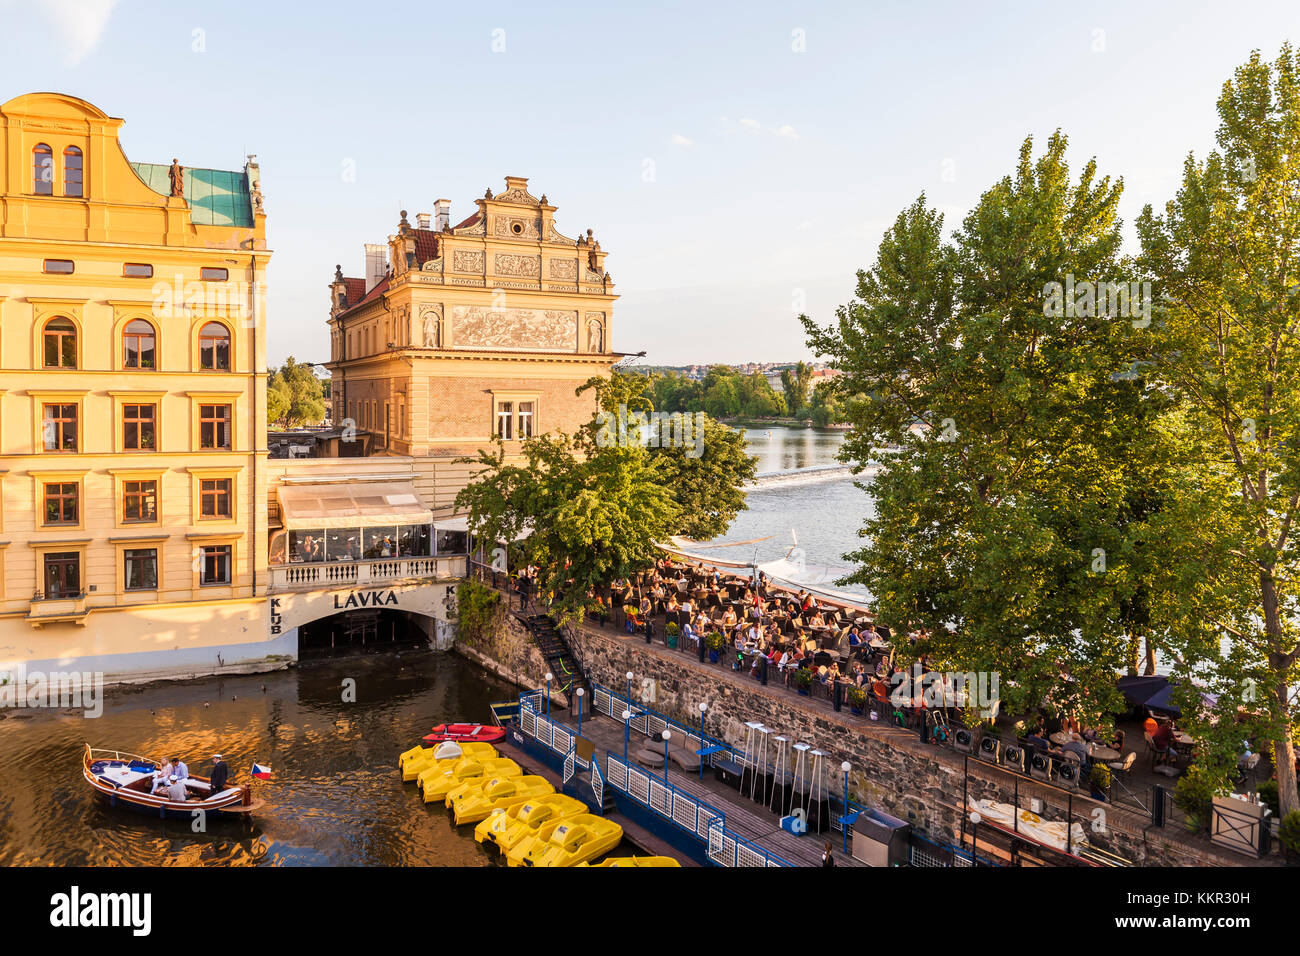 Tschechien, Prag, Altstadt, Moldau, Restaurant Club Lavka, Terrasse, Ausflugsboot Stockfoto